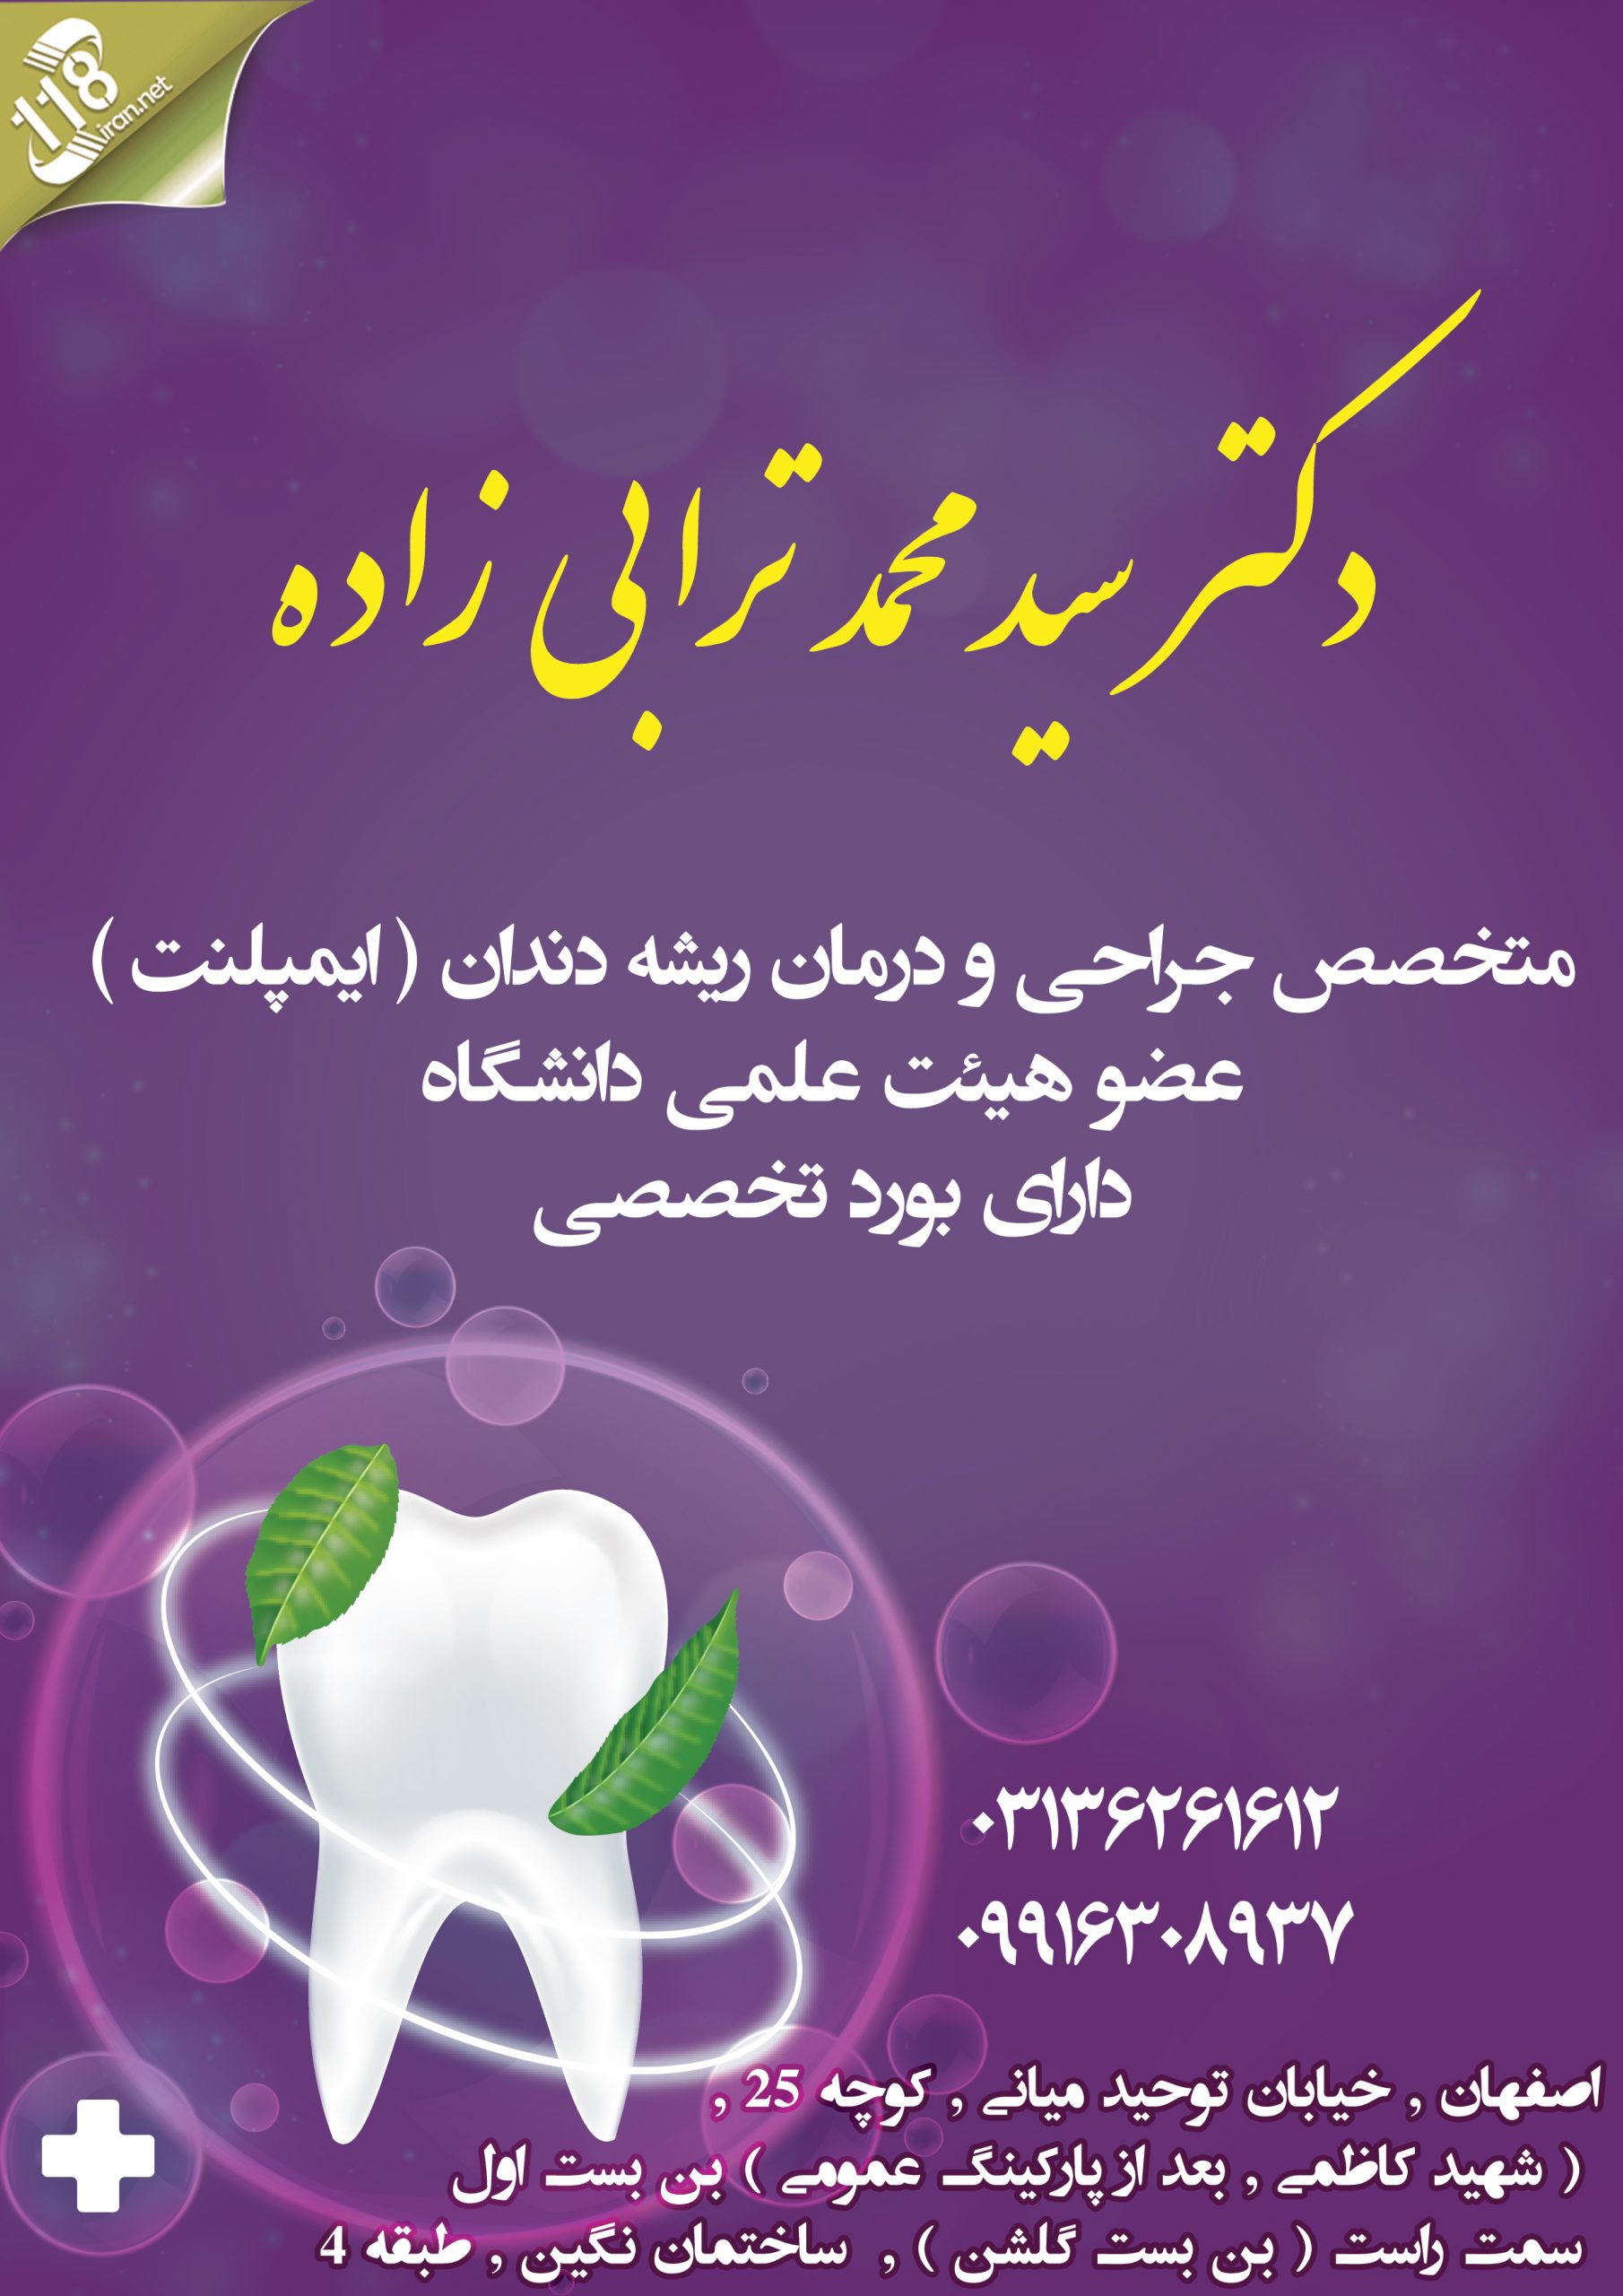  دکتر سید محمد ترابی زاده در اصفهان